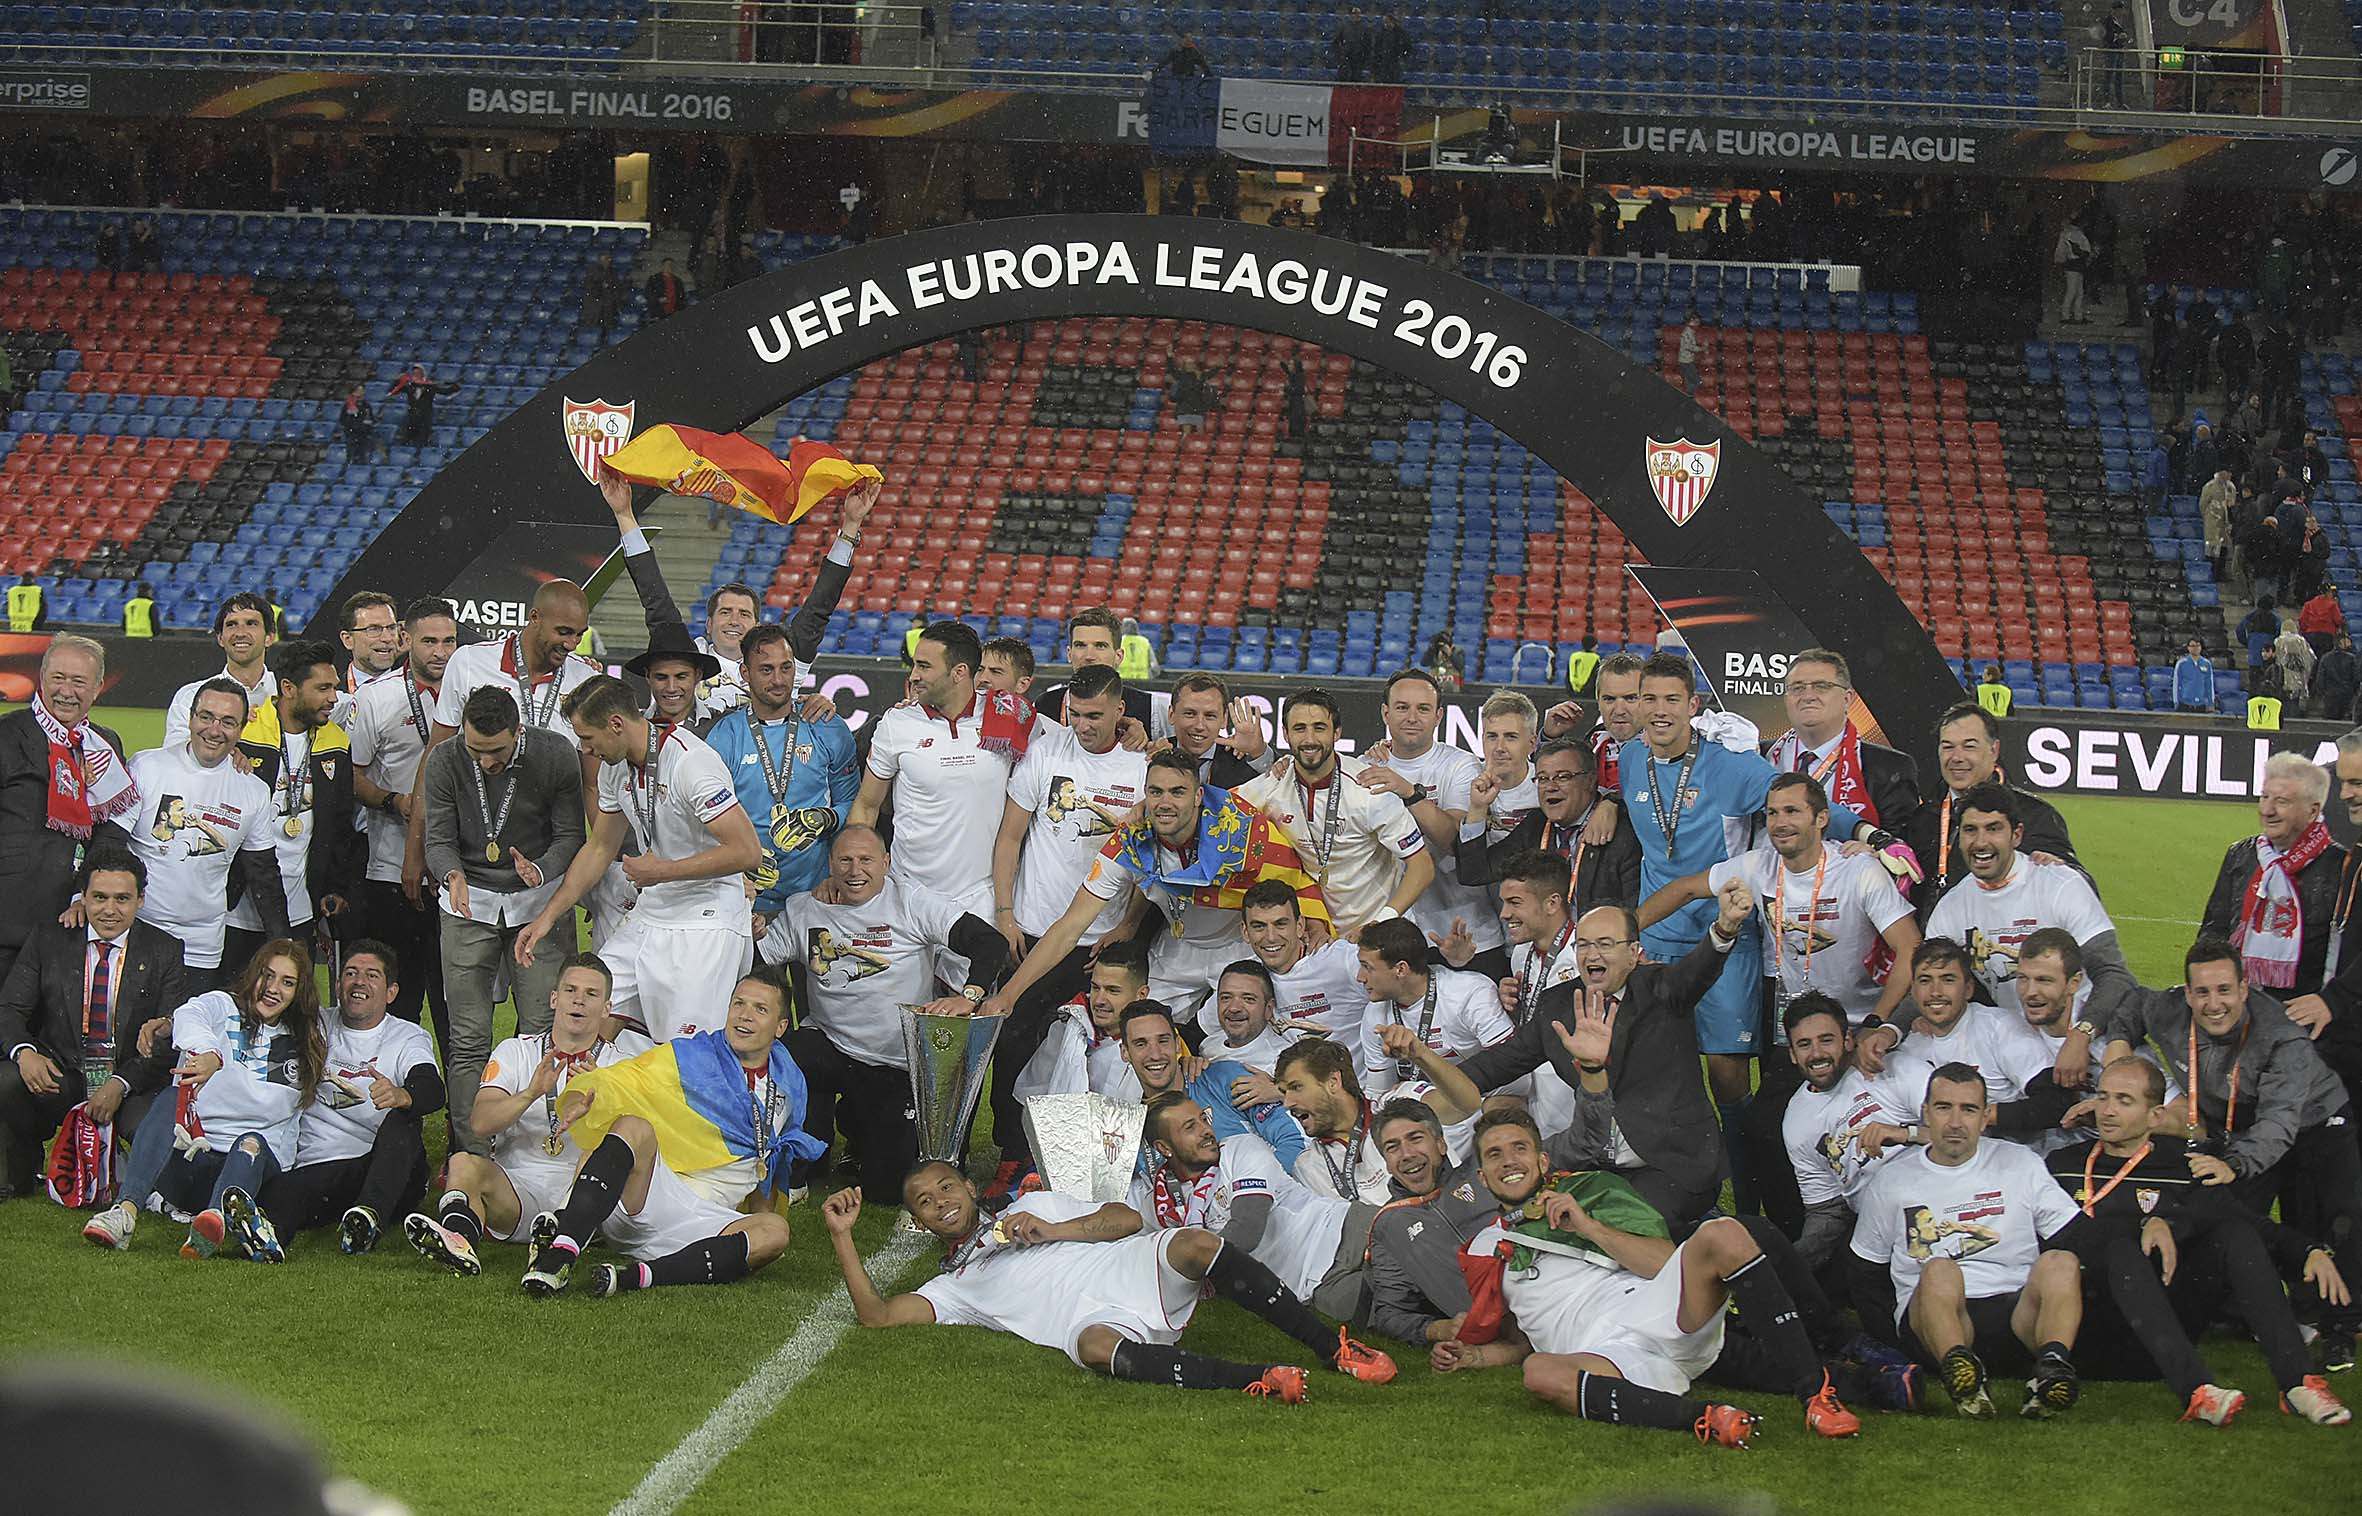 El Sevilla celebra como campeón la quinta Europa League en Basilea